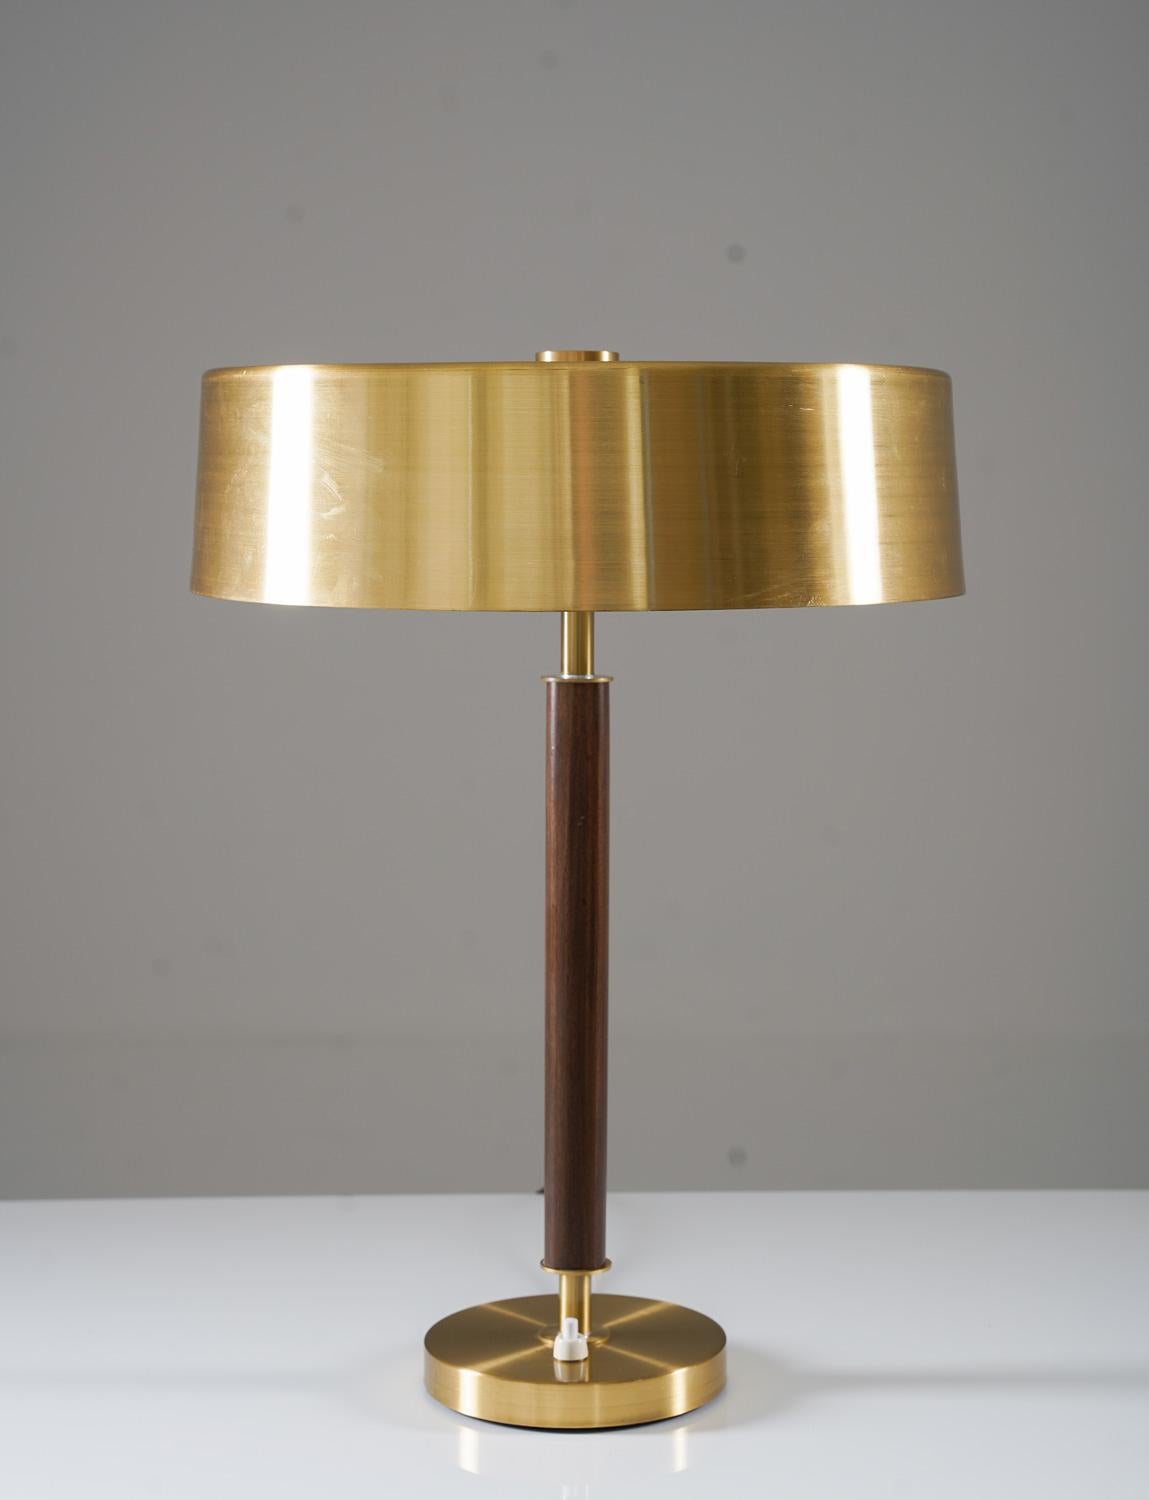 Tischleuchte aus gebürstetem Messing und Palisanderholz von Boréns, Schweden.
Diese beeindruckende Lampe besteht aus einem Stiel, der von einem Schirm umgeben ist und auf einem Fuß aus gebürstetem Messing steht. 
Zustand: Sehr guter